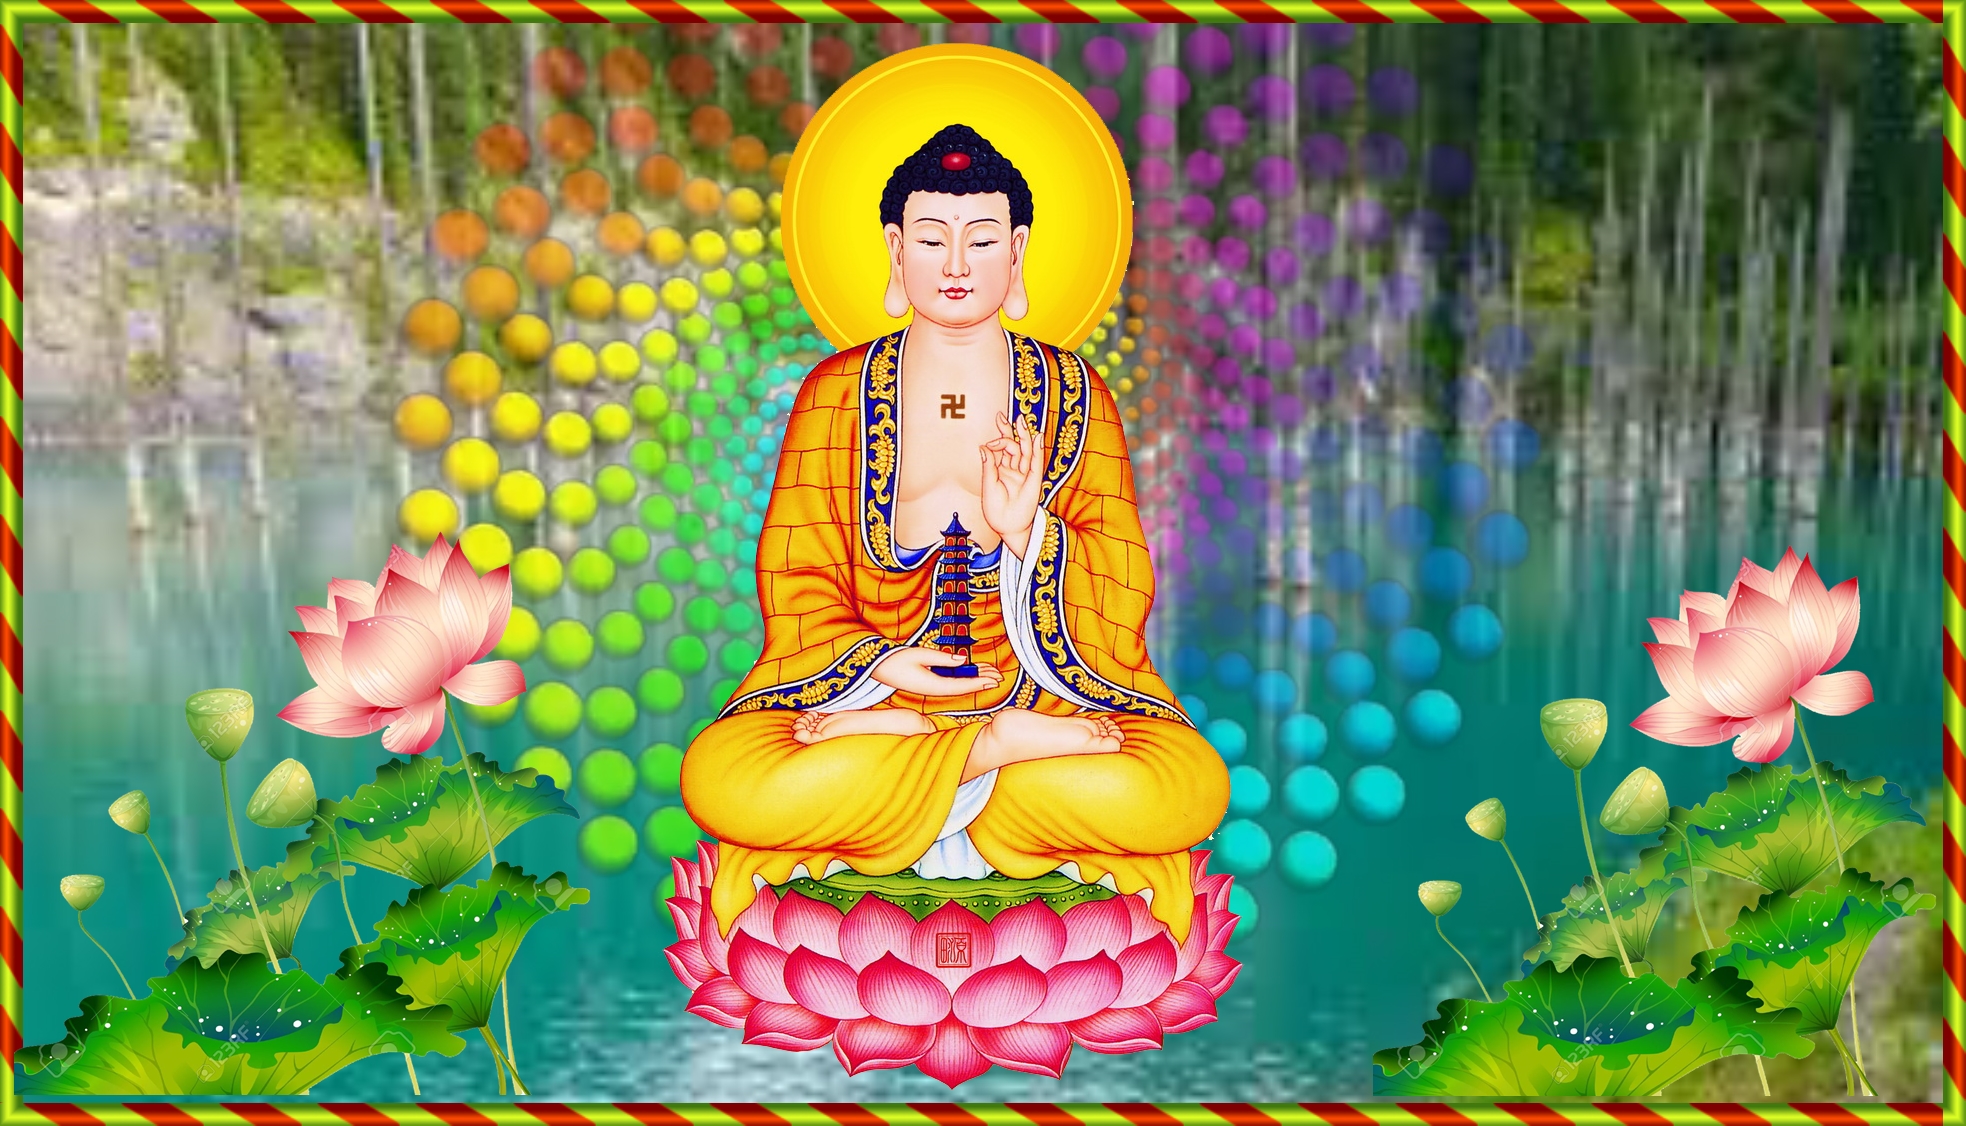 Bộ sưu tập hình ảnh Phật Tổ Như Lai đẹp nhất, đầy đủ chất lượng Full HD